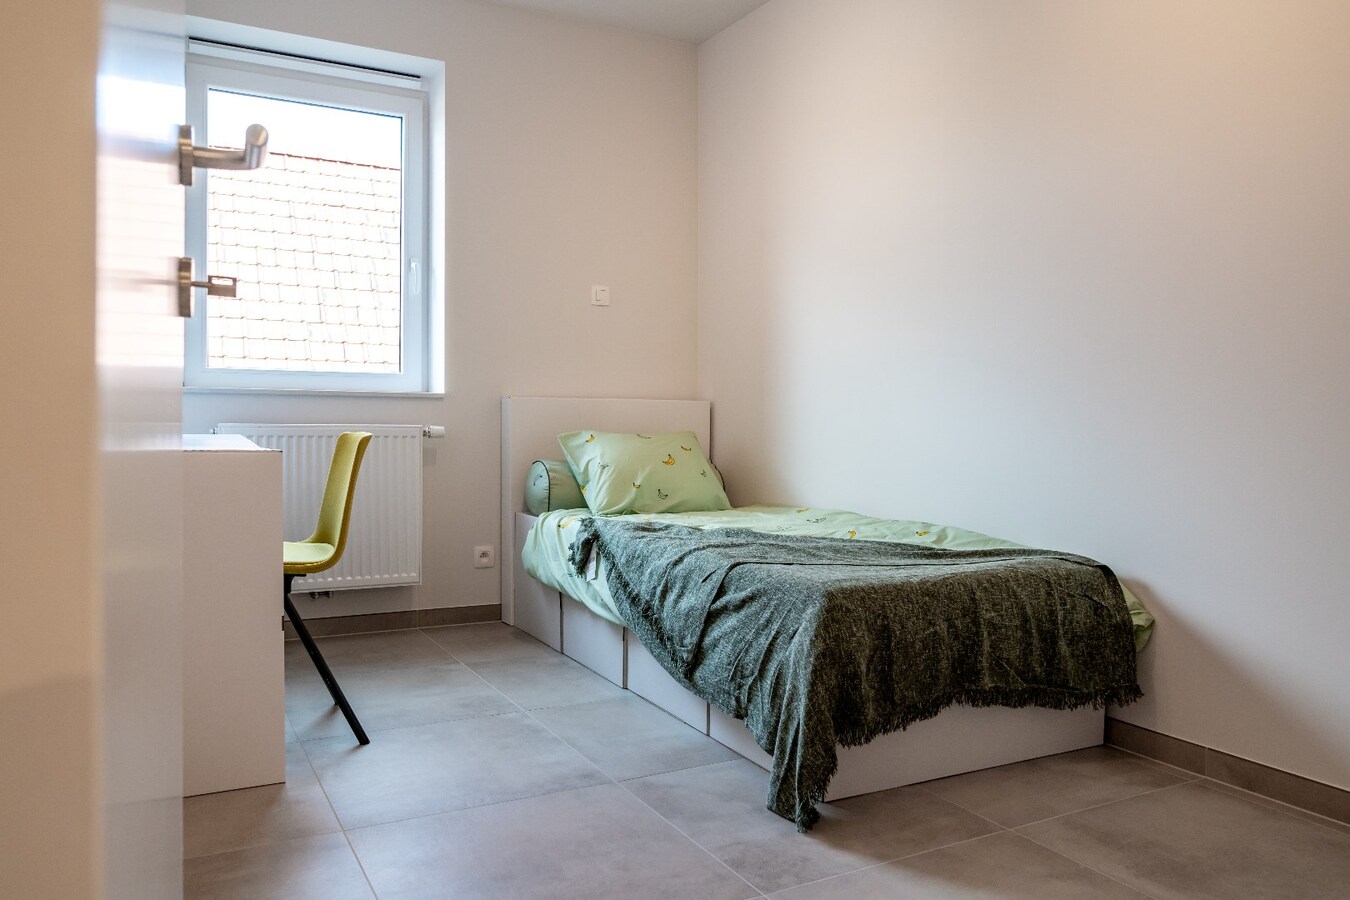 Gelijkvloers nieuwbouwappartement met 2 slaapkamers in Residentie Geuze St-Louis te Ingelmunster 